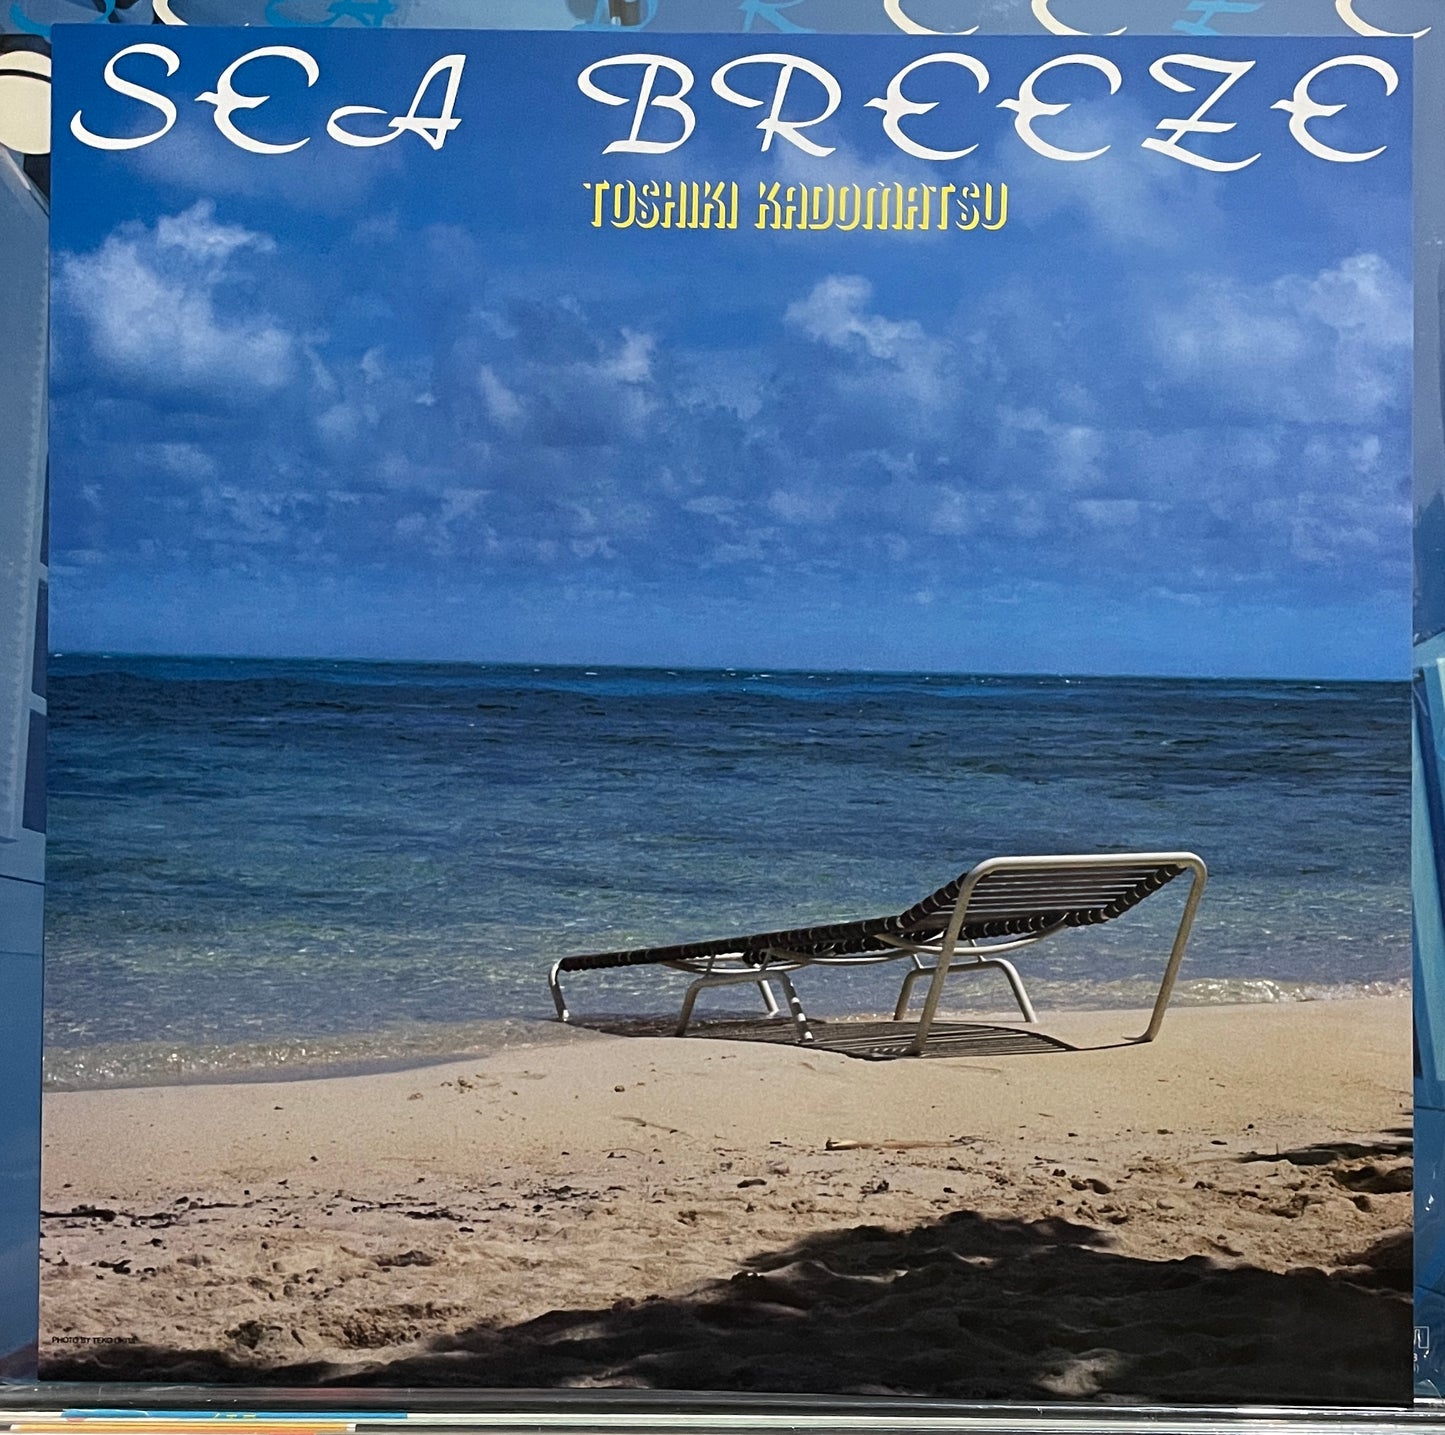 Toshiki Kadomatsu “Sea Breeze” (1981)